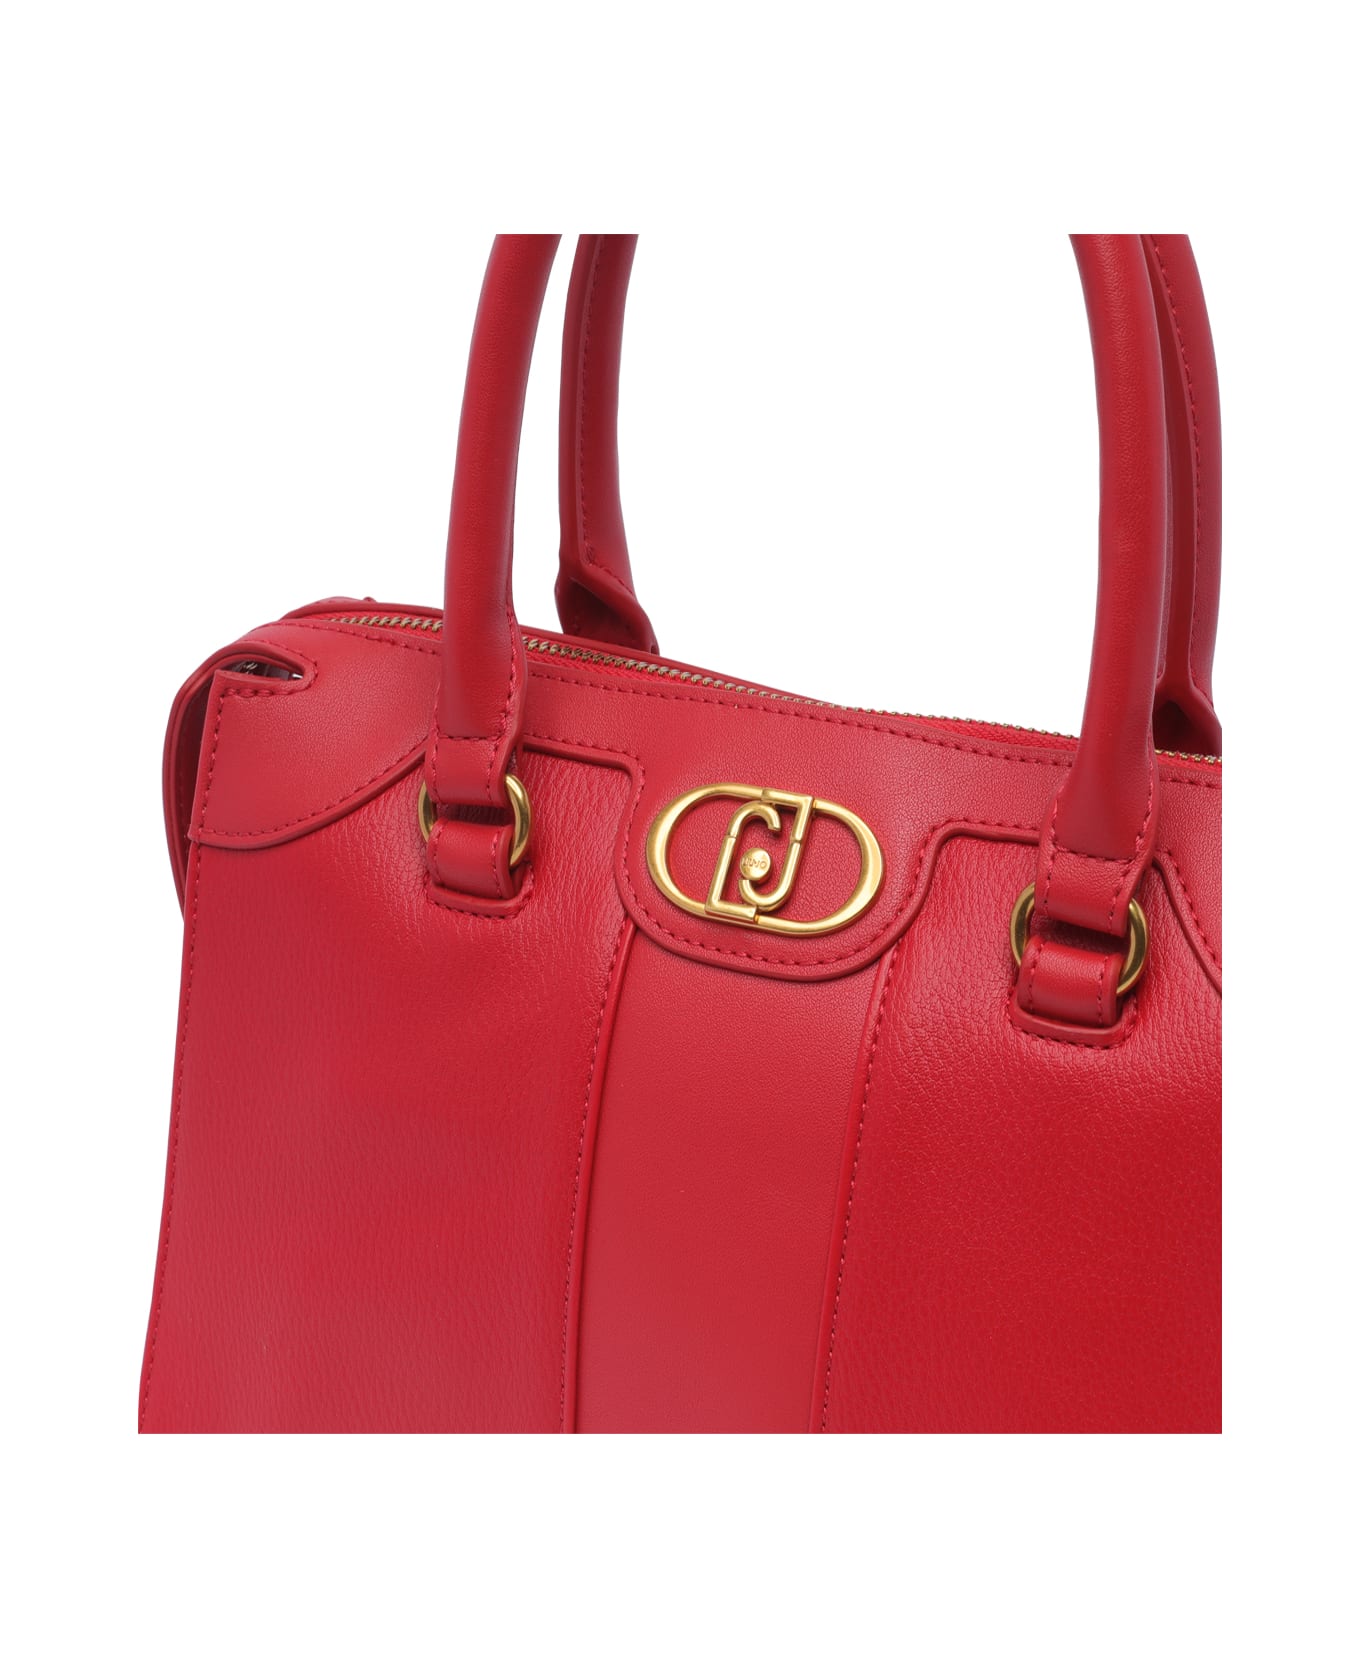 Liu-Jo Logo Handbag - Red